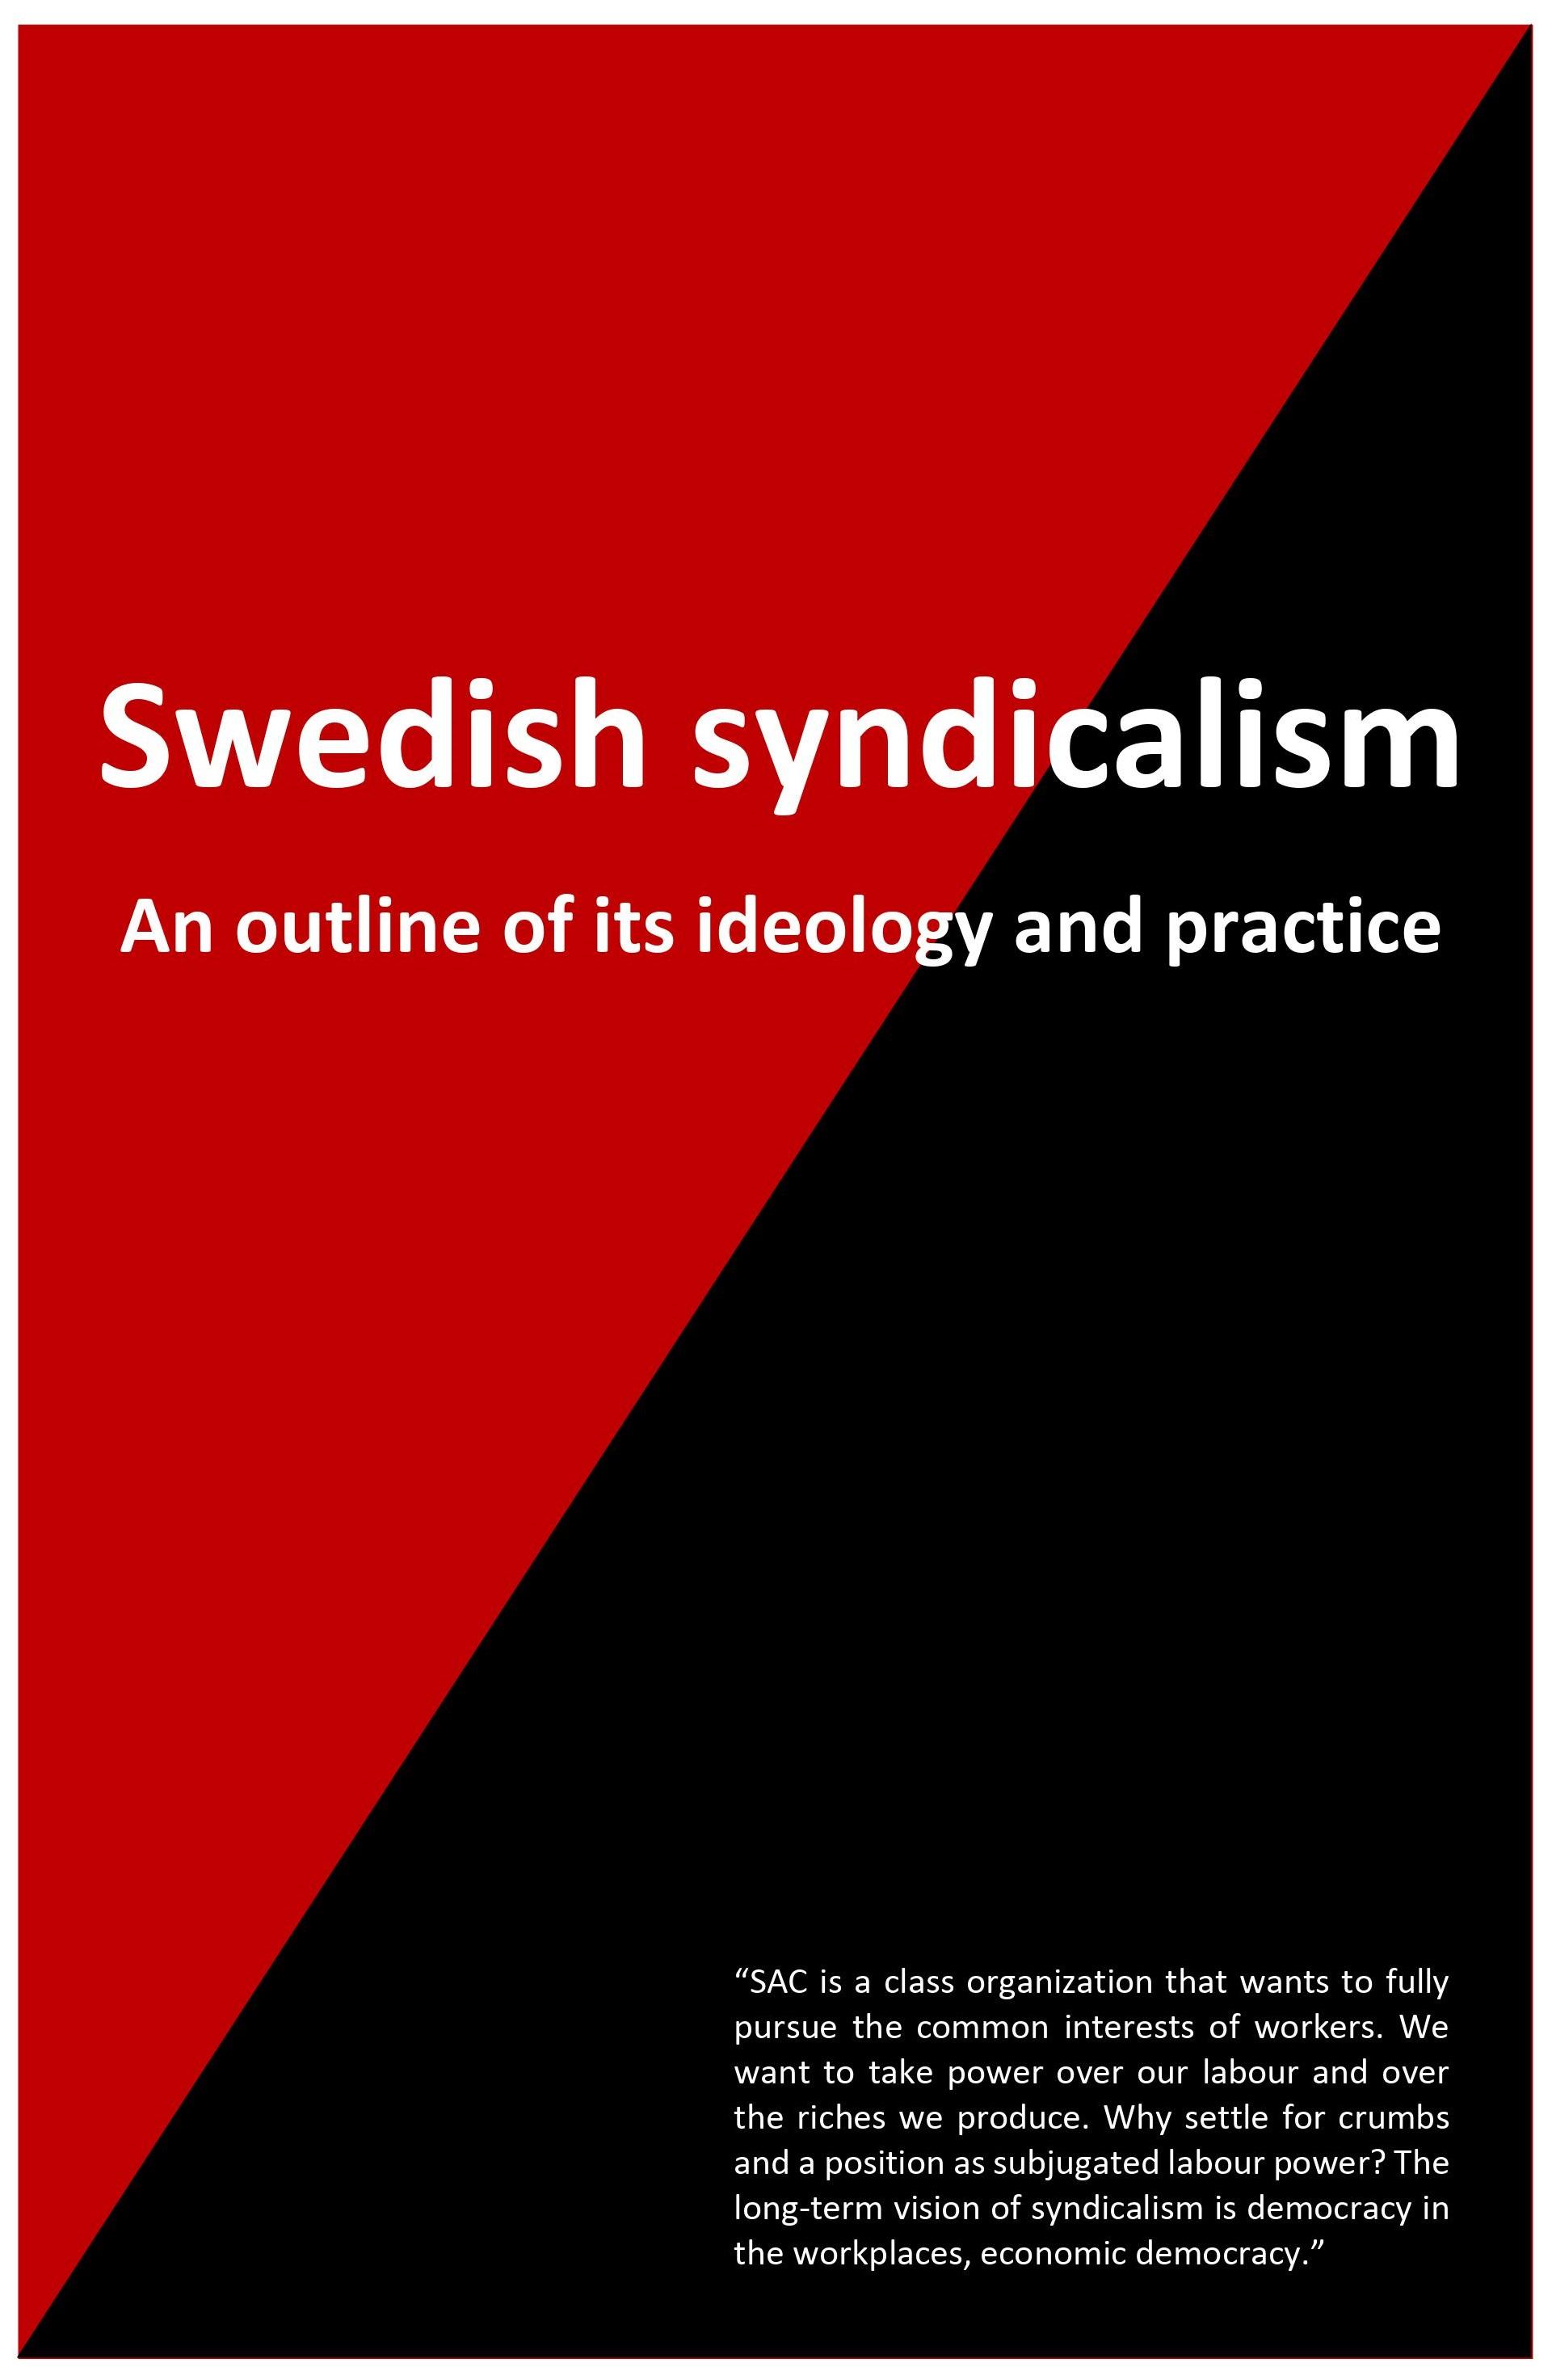 r-h-rasmus-hastbacka-swedish-syndicalism-3.jpg